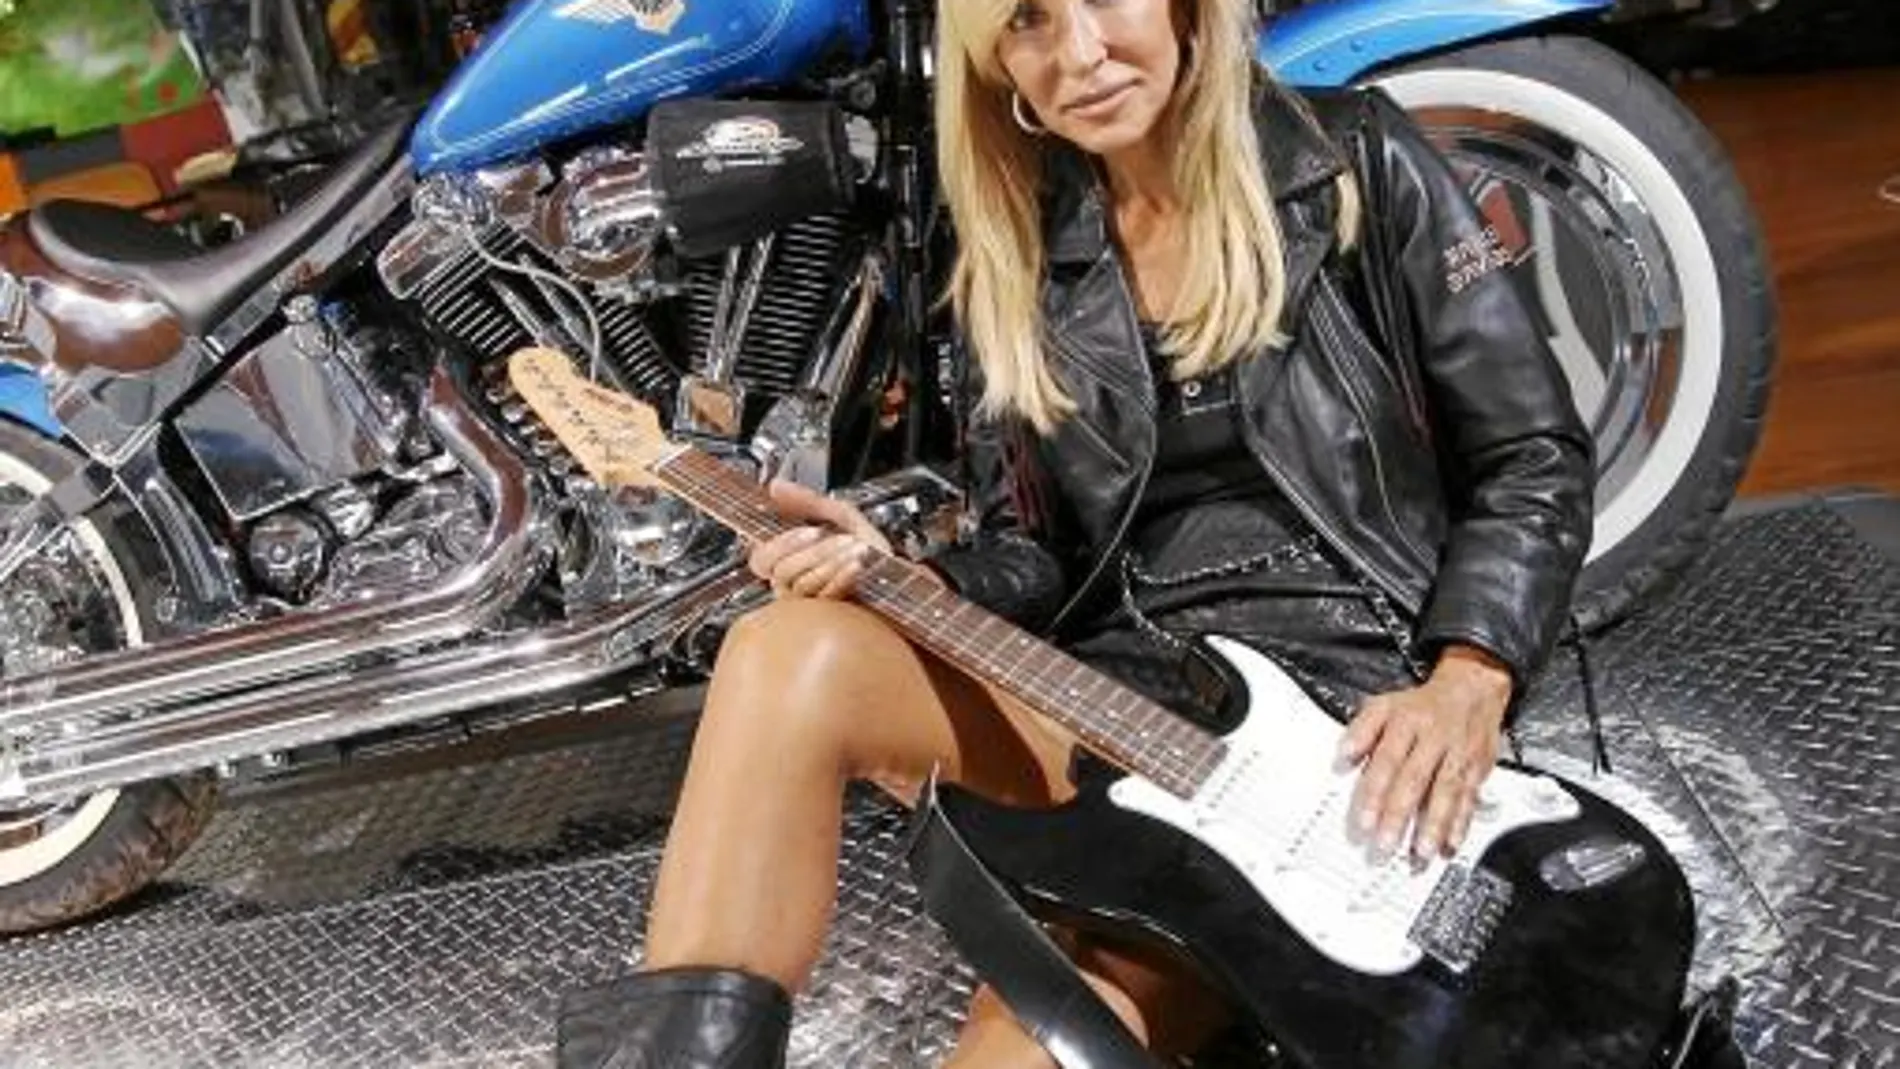 «Soy una mujer todoterreno. Me veo capaz de recorrer la Ruta 66 en una Harley»